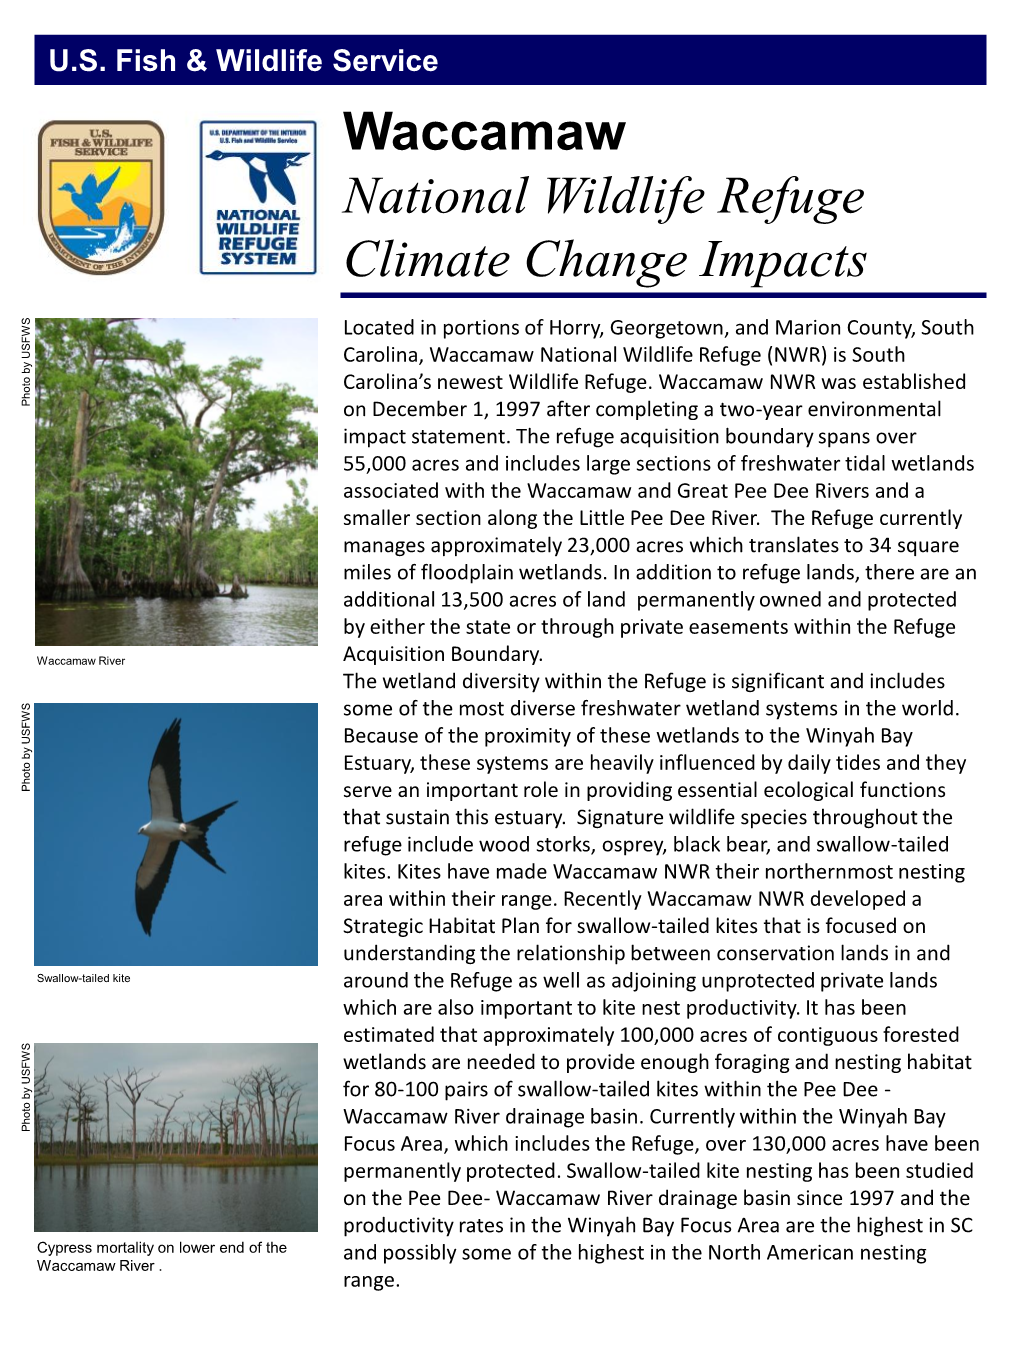 Waccamaw National Wildlife Refuge Climate Change Impacts